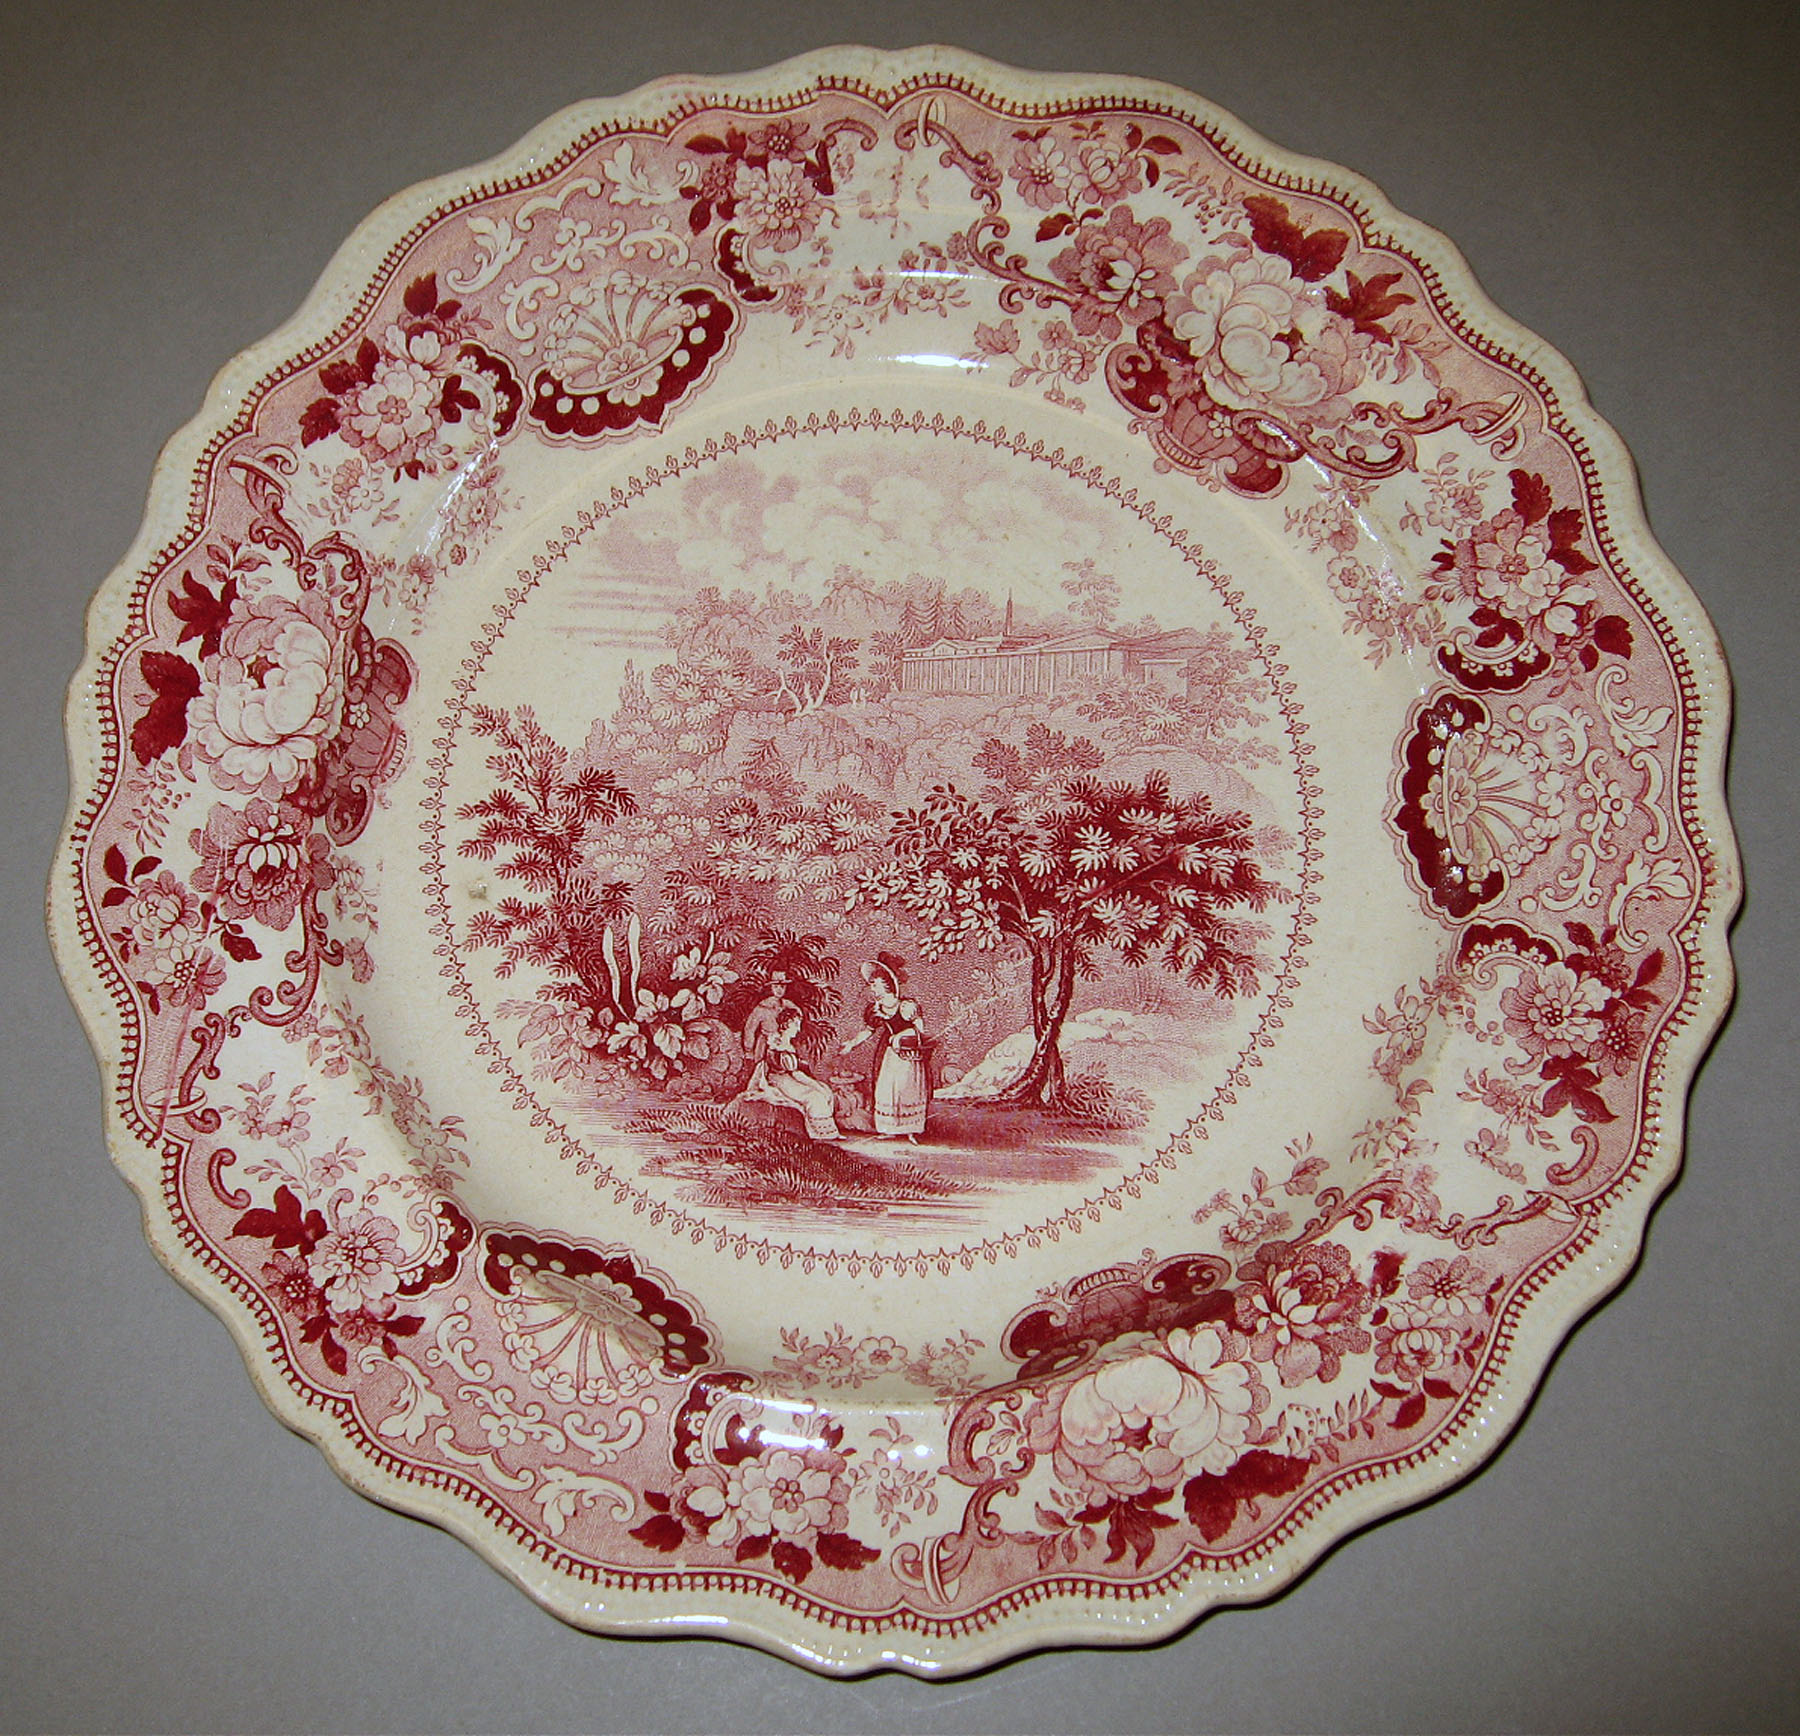 1956.0046.035 Adams earthenware plate